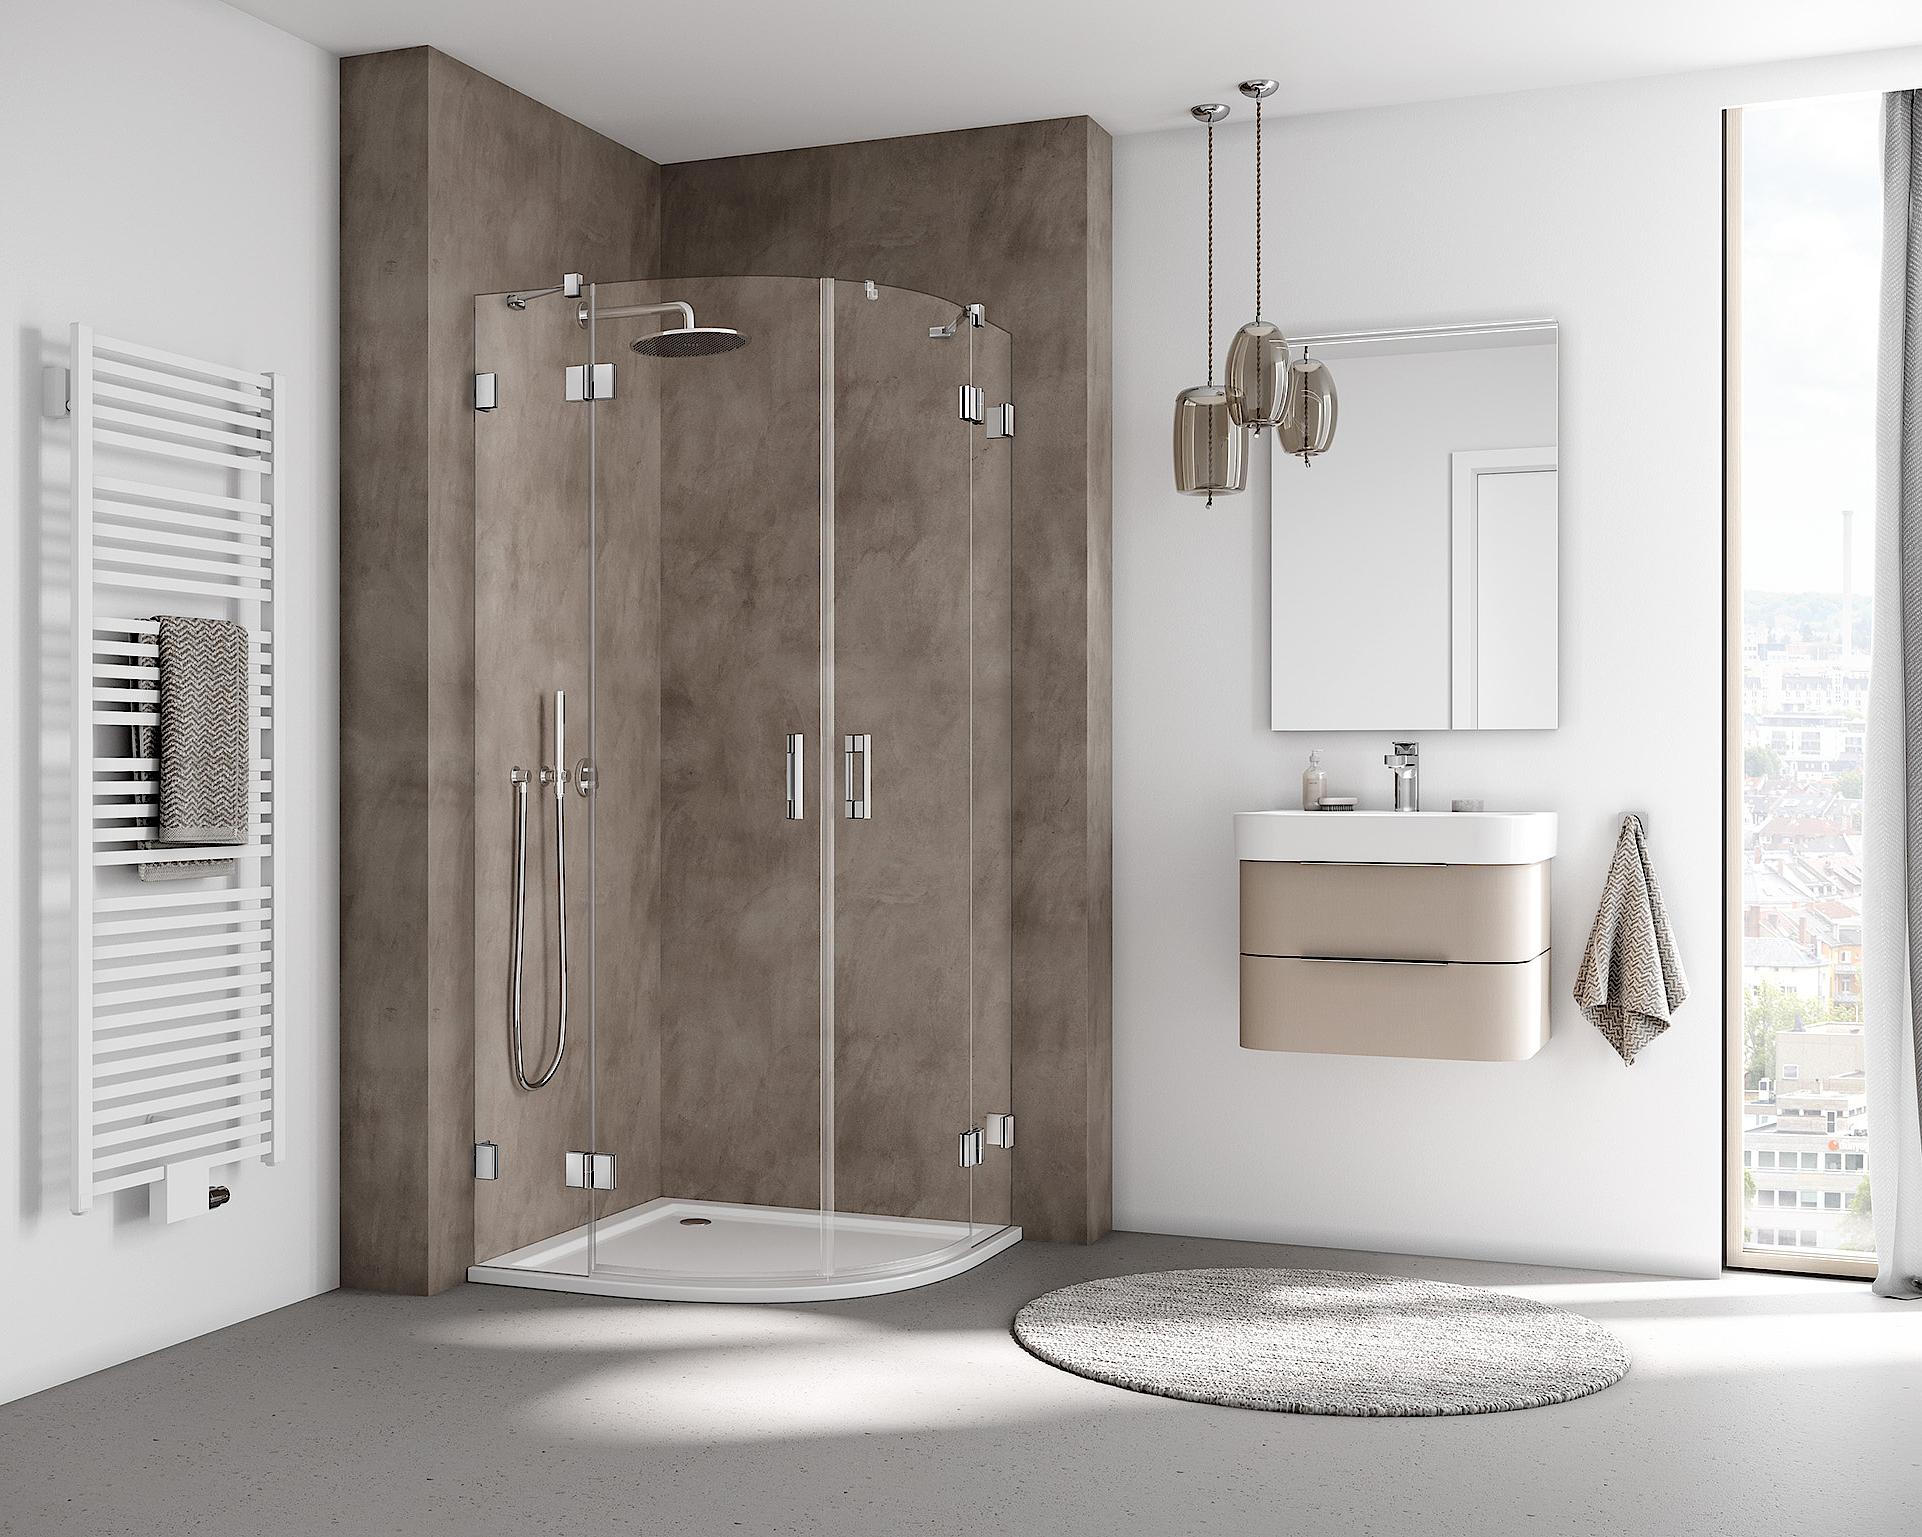 Kermi hinged shower enclosure, LIGA quadrant shower enclosure (hinged doors with fixed panels) with wall hinge